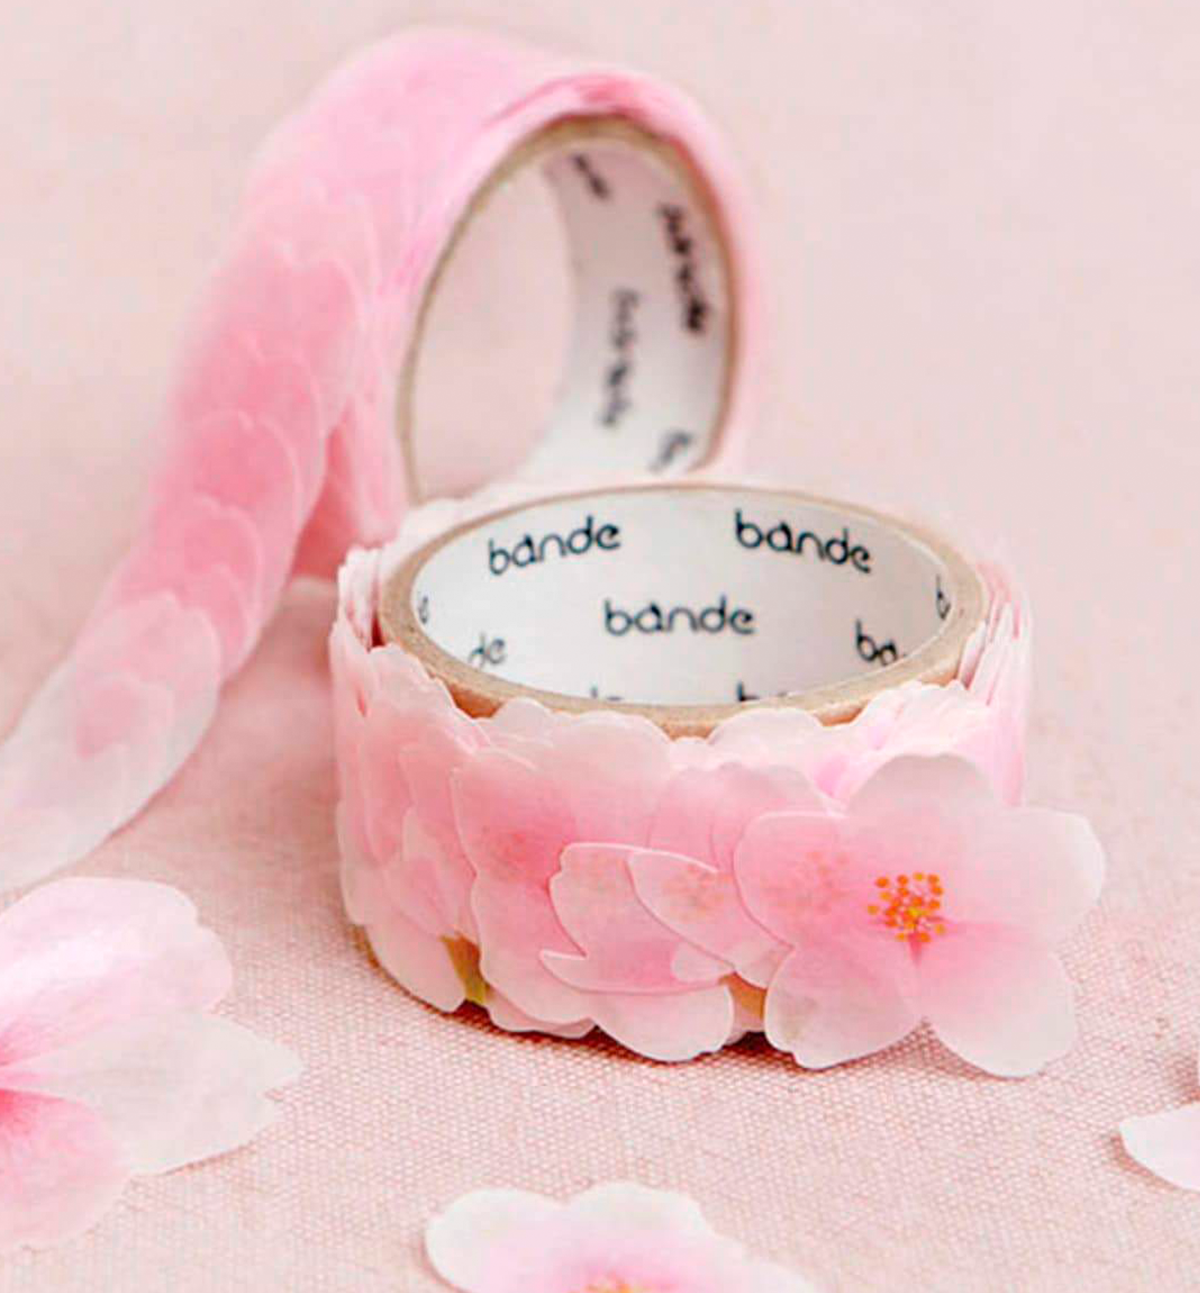 Cherry Blossom Flower Tape